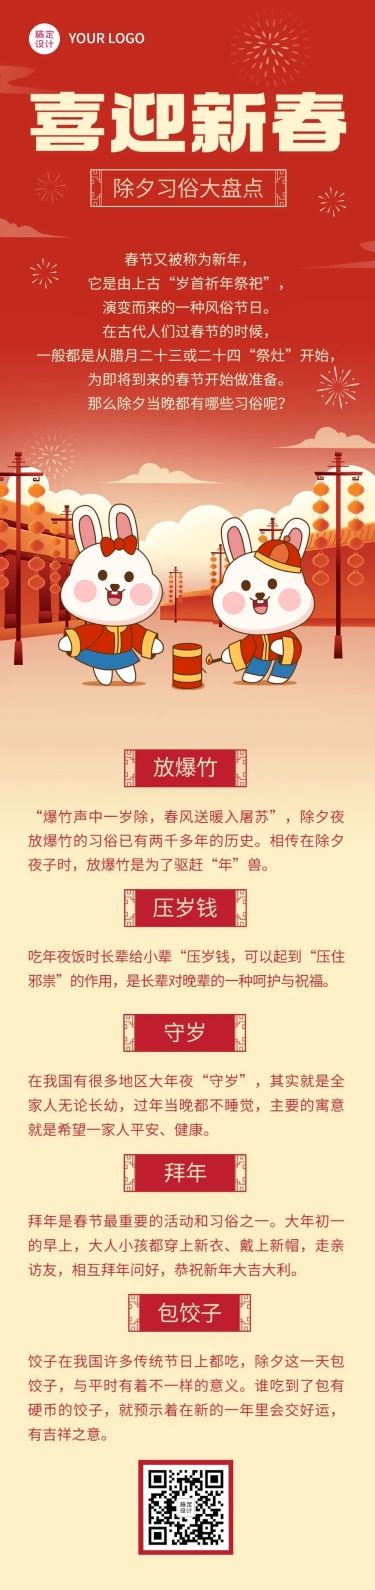 春节除夕节日习俗科普文章长图